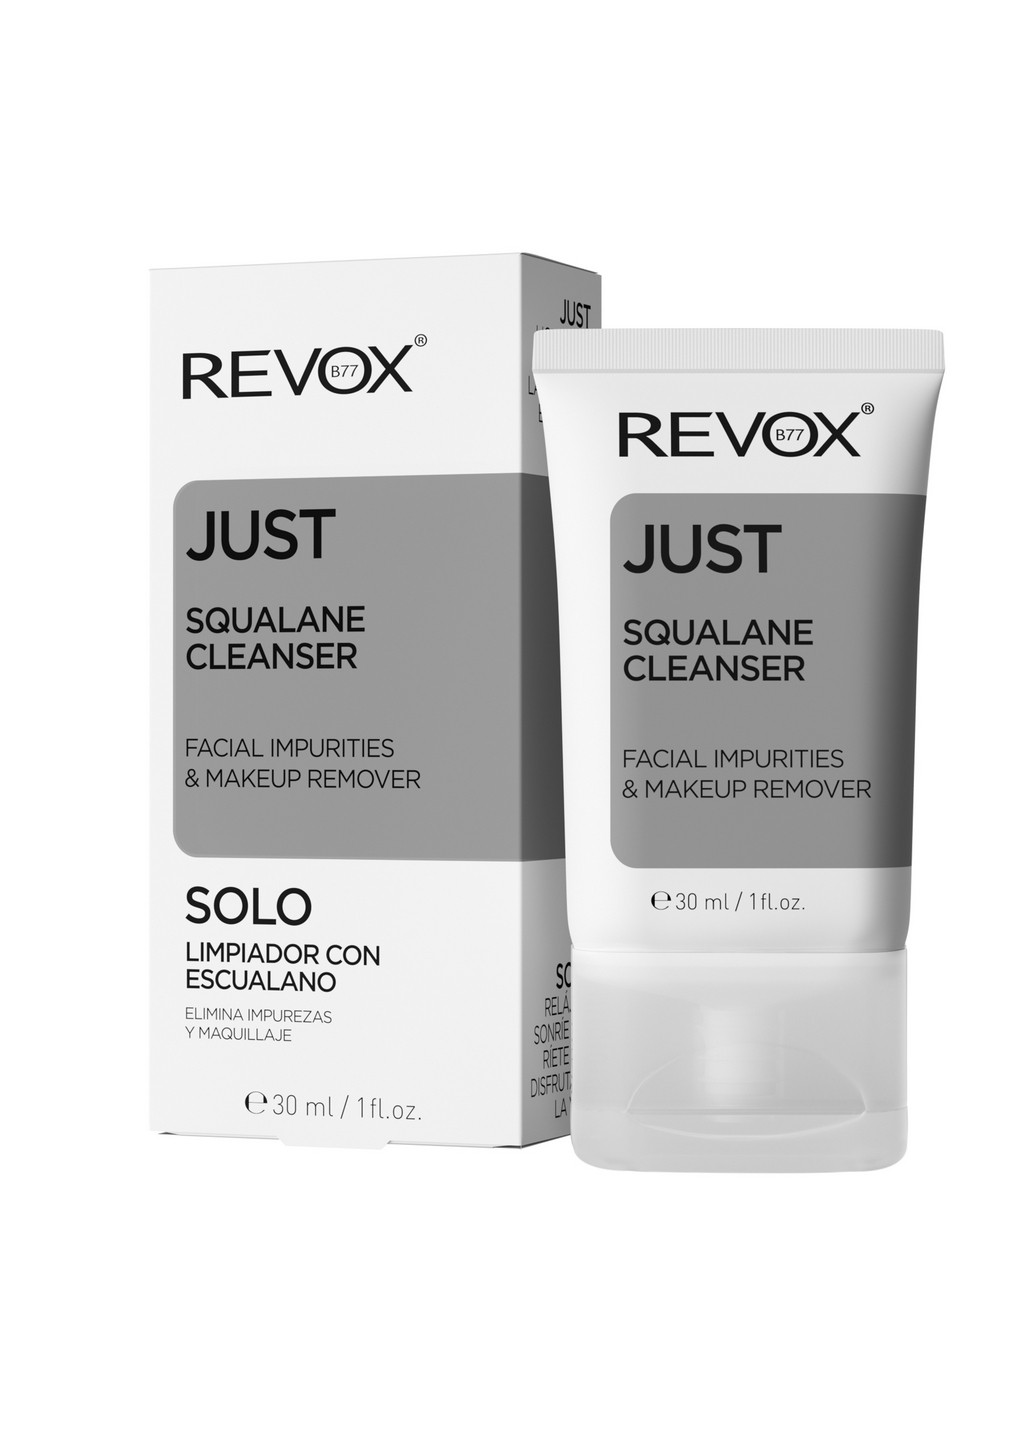 Увлажняющая эмульсия со скваланом для очищения и демакияжа B77 Just Squalane Cleanser - Facial & Makeup Remover, 30 мл Revox (264921011)